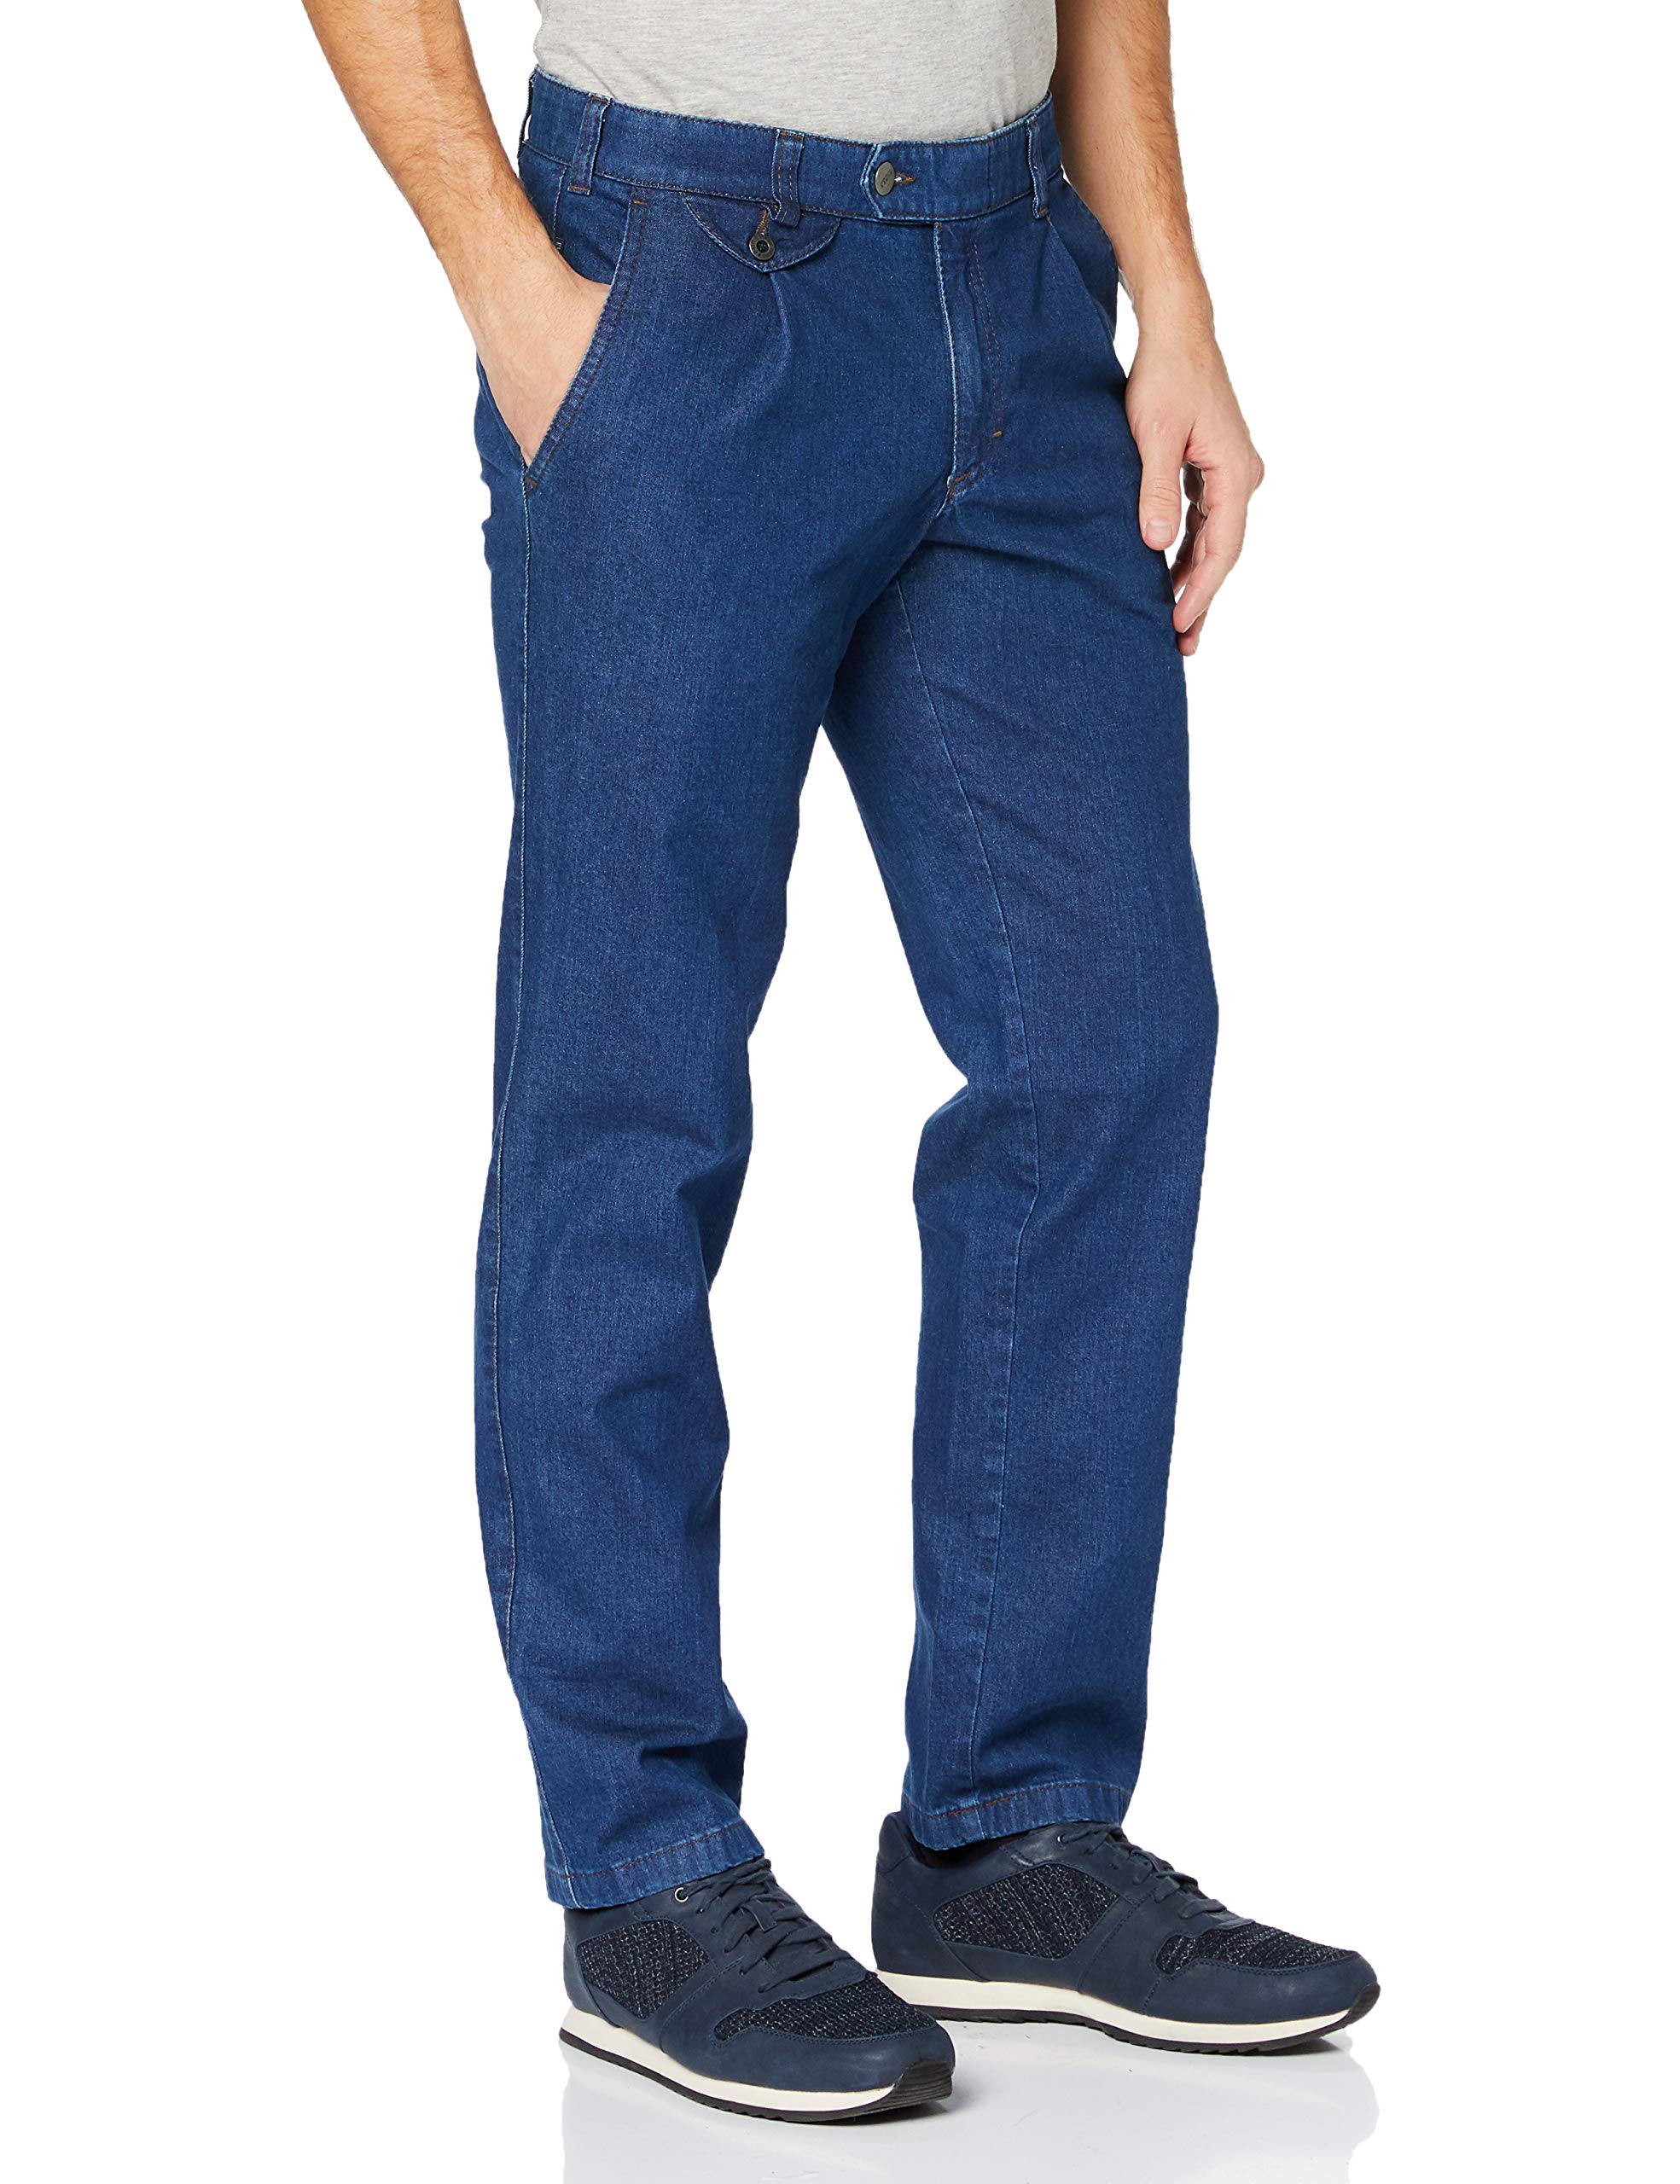 EUREX by BRAX Herren Ergo Cut Jeans Bundfalten-Hose Style Fred 321 Stretch, Blau 22, 39U